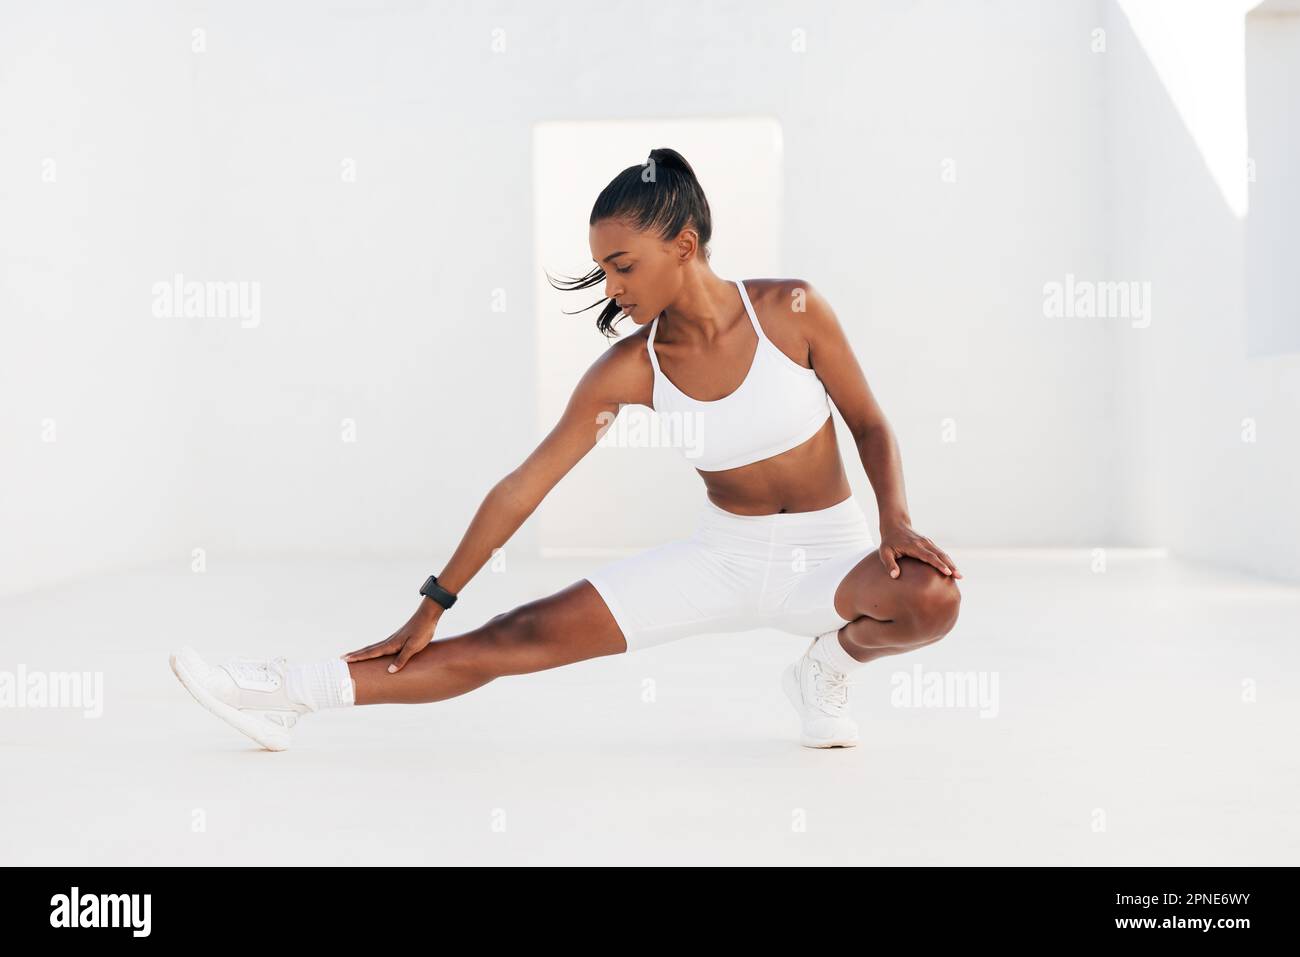 Eine Frau in weißer Fitnesskleidung wärmt ihren Körper und ihre Beine auf. Eine Frau, die Stretching-Übungen in einem weißen Outdoor-Studio macht. Stockfoto